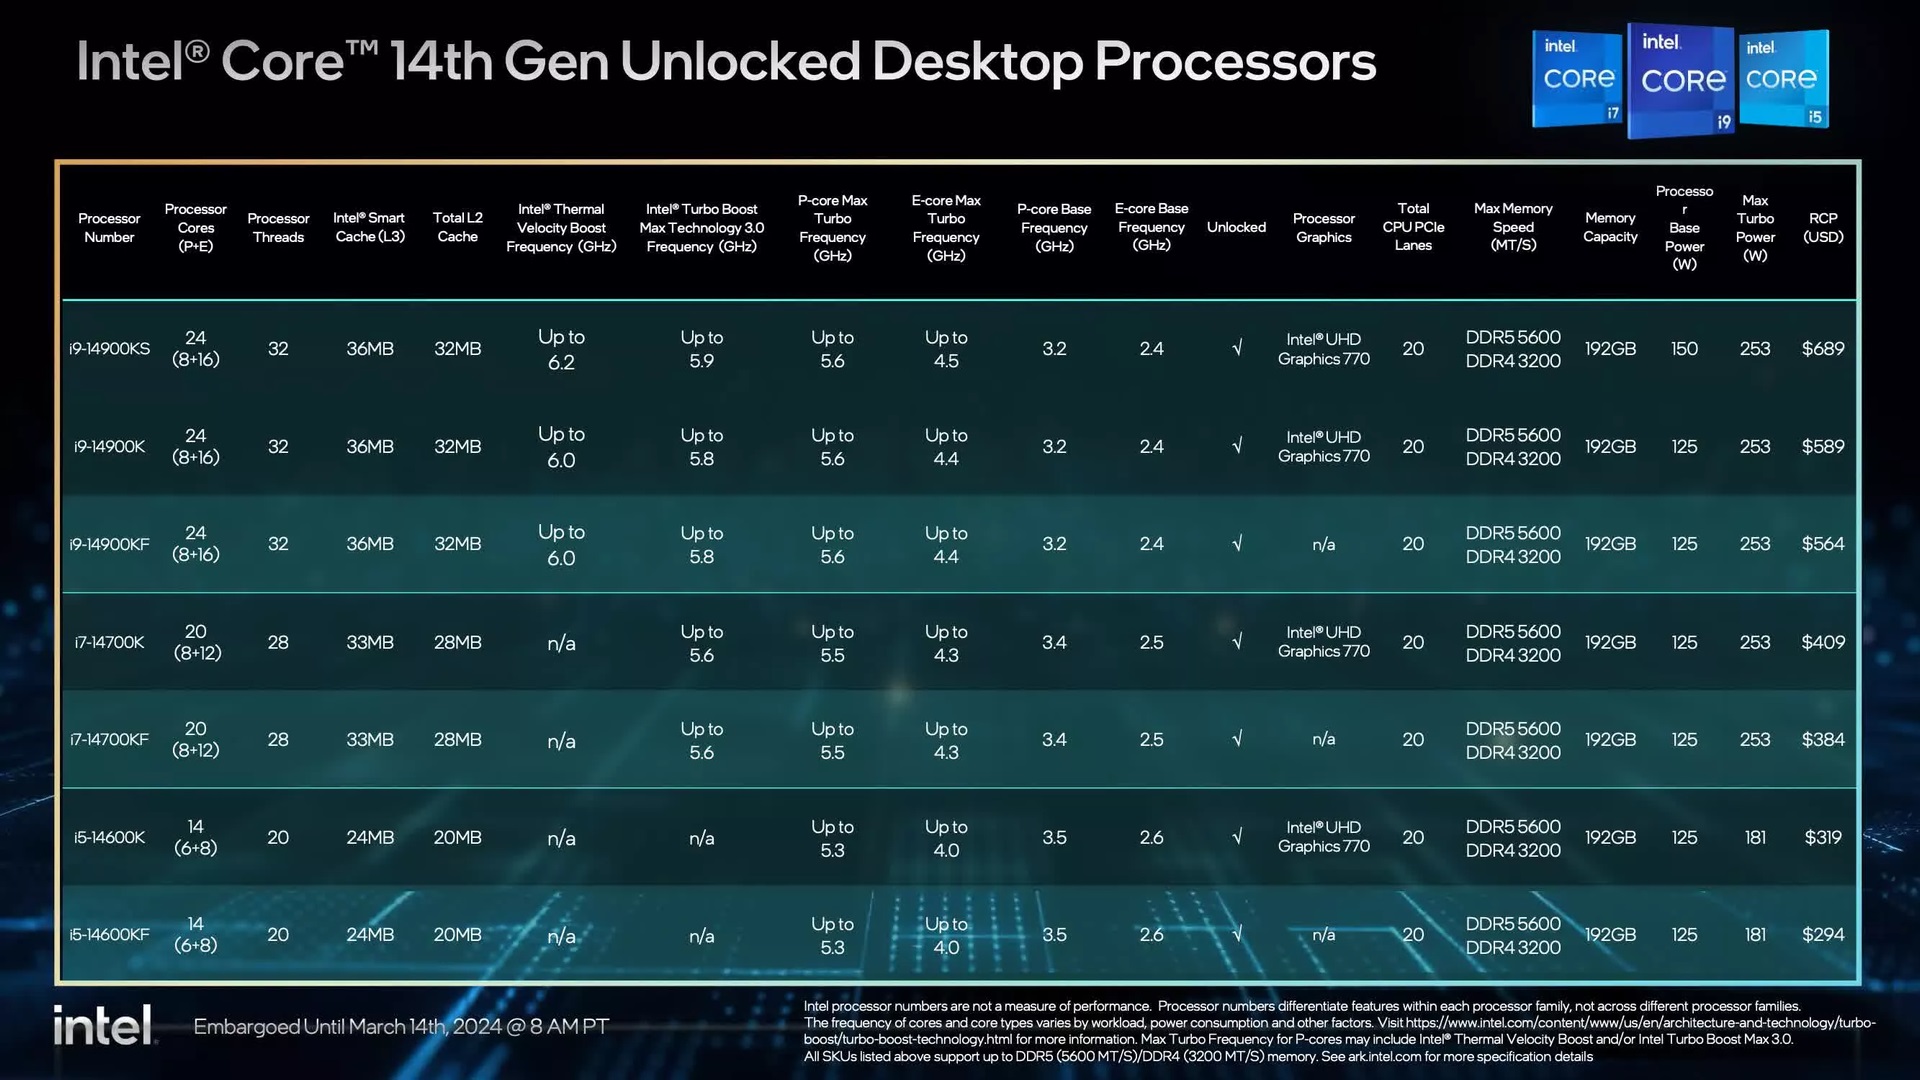 Test Intel Core i9-14900KS. Jeszcze bardziej wyżyłowana 14. generacja